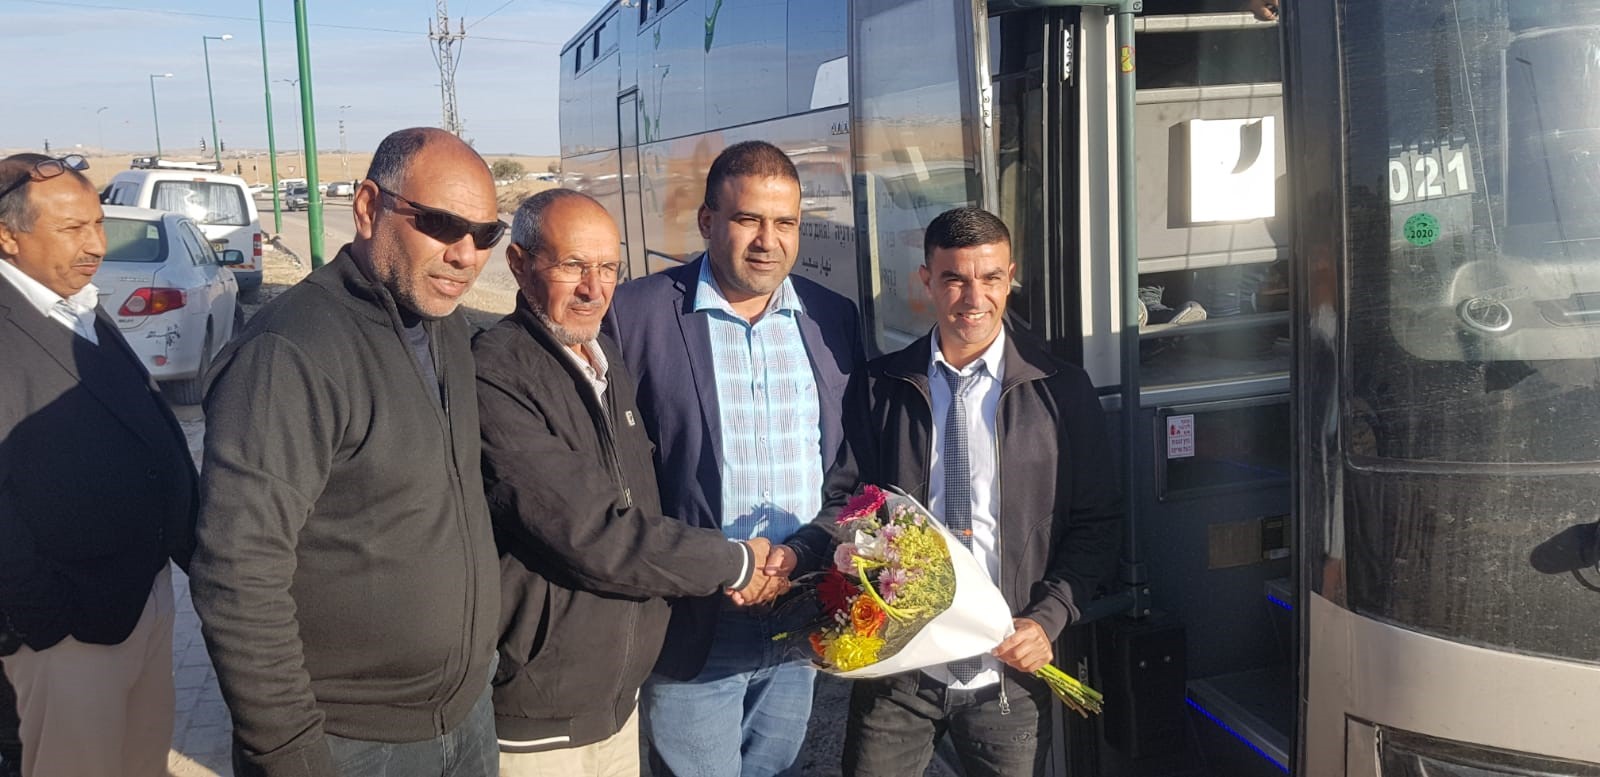 היסטוריה באל קסום – לראשונה קו אוטובוס ציבורי נכנס לאחד מישובי המועצה